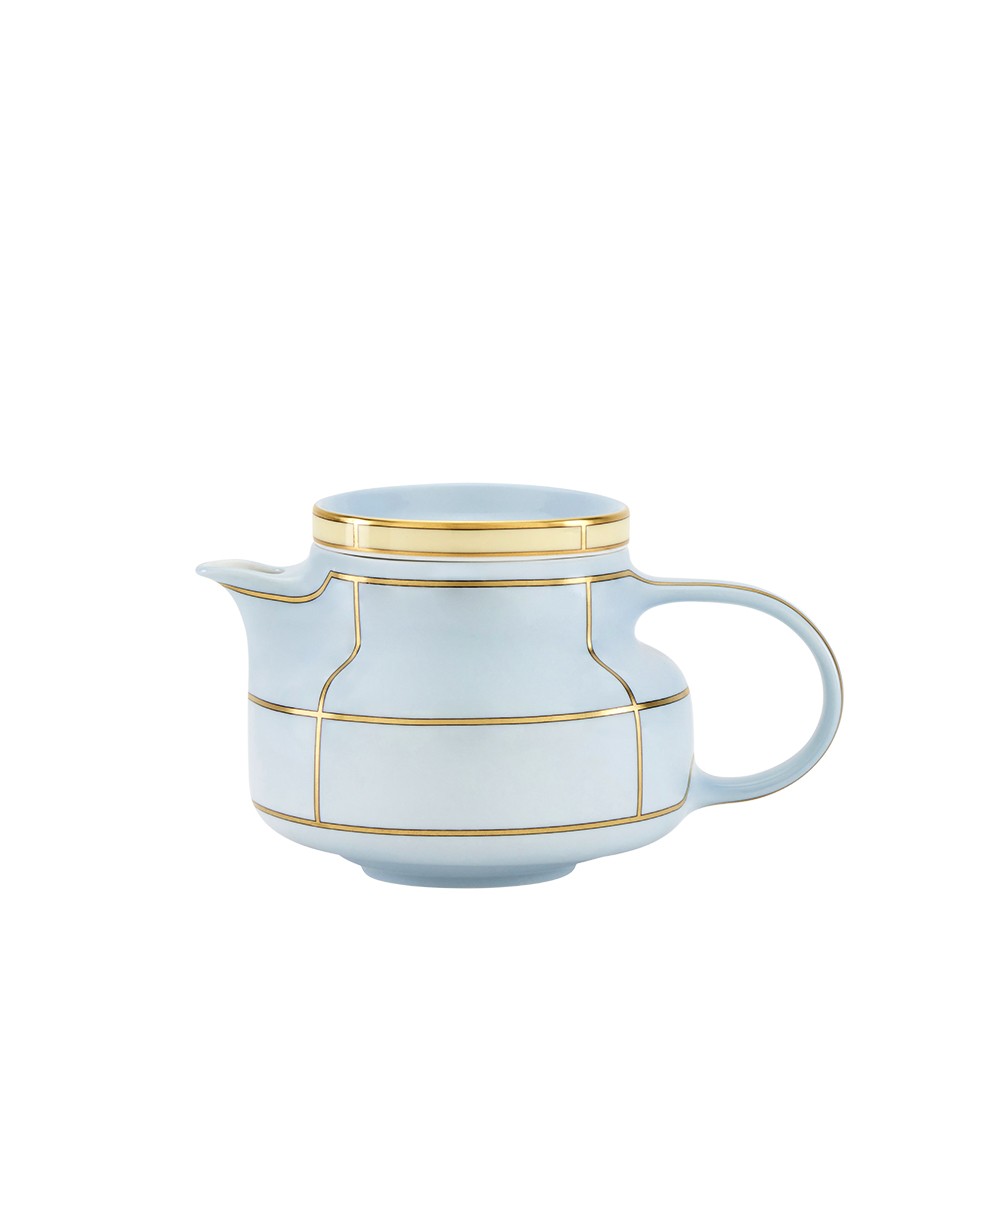 Hier abgebildet der Teapot with Cover der Diva Kollektion von Ginori 1735 - RAUM concept store